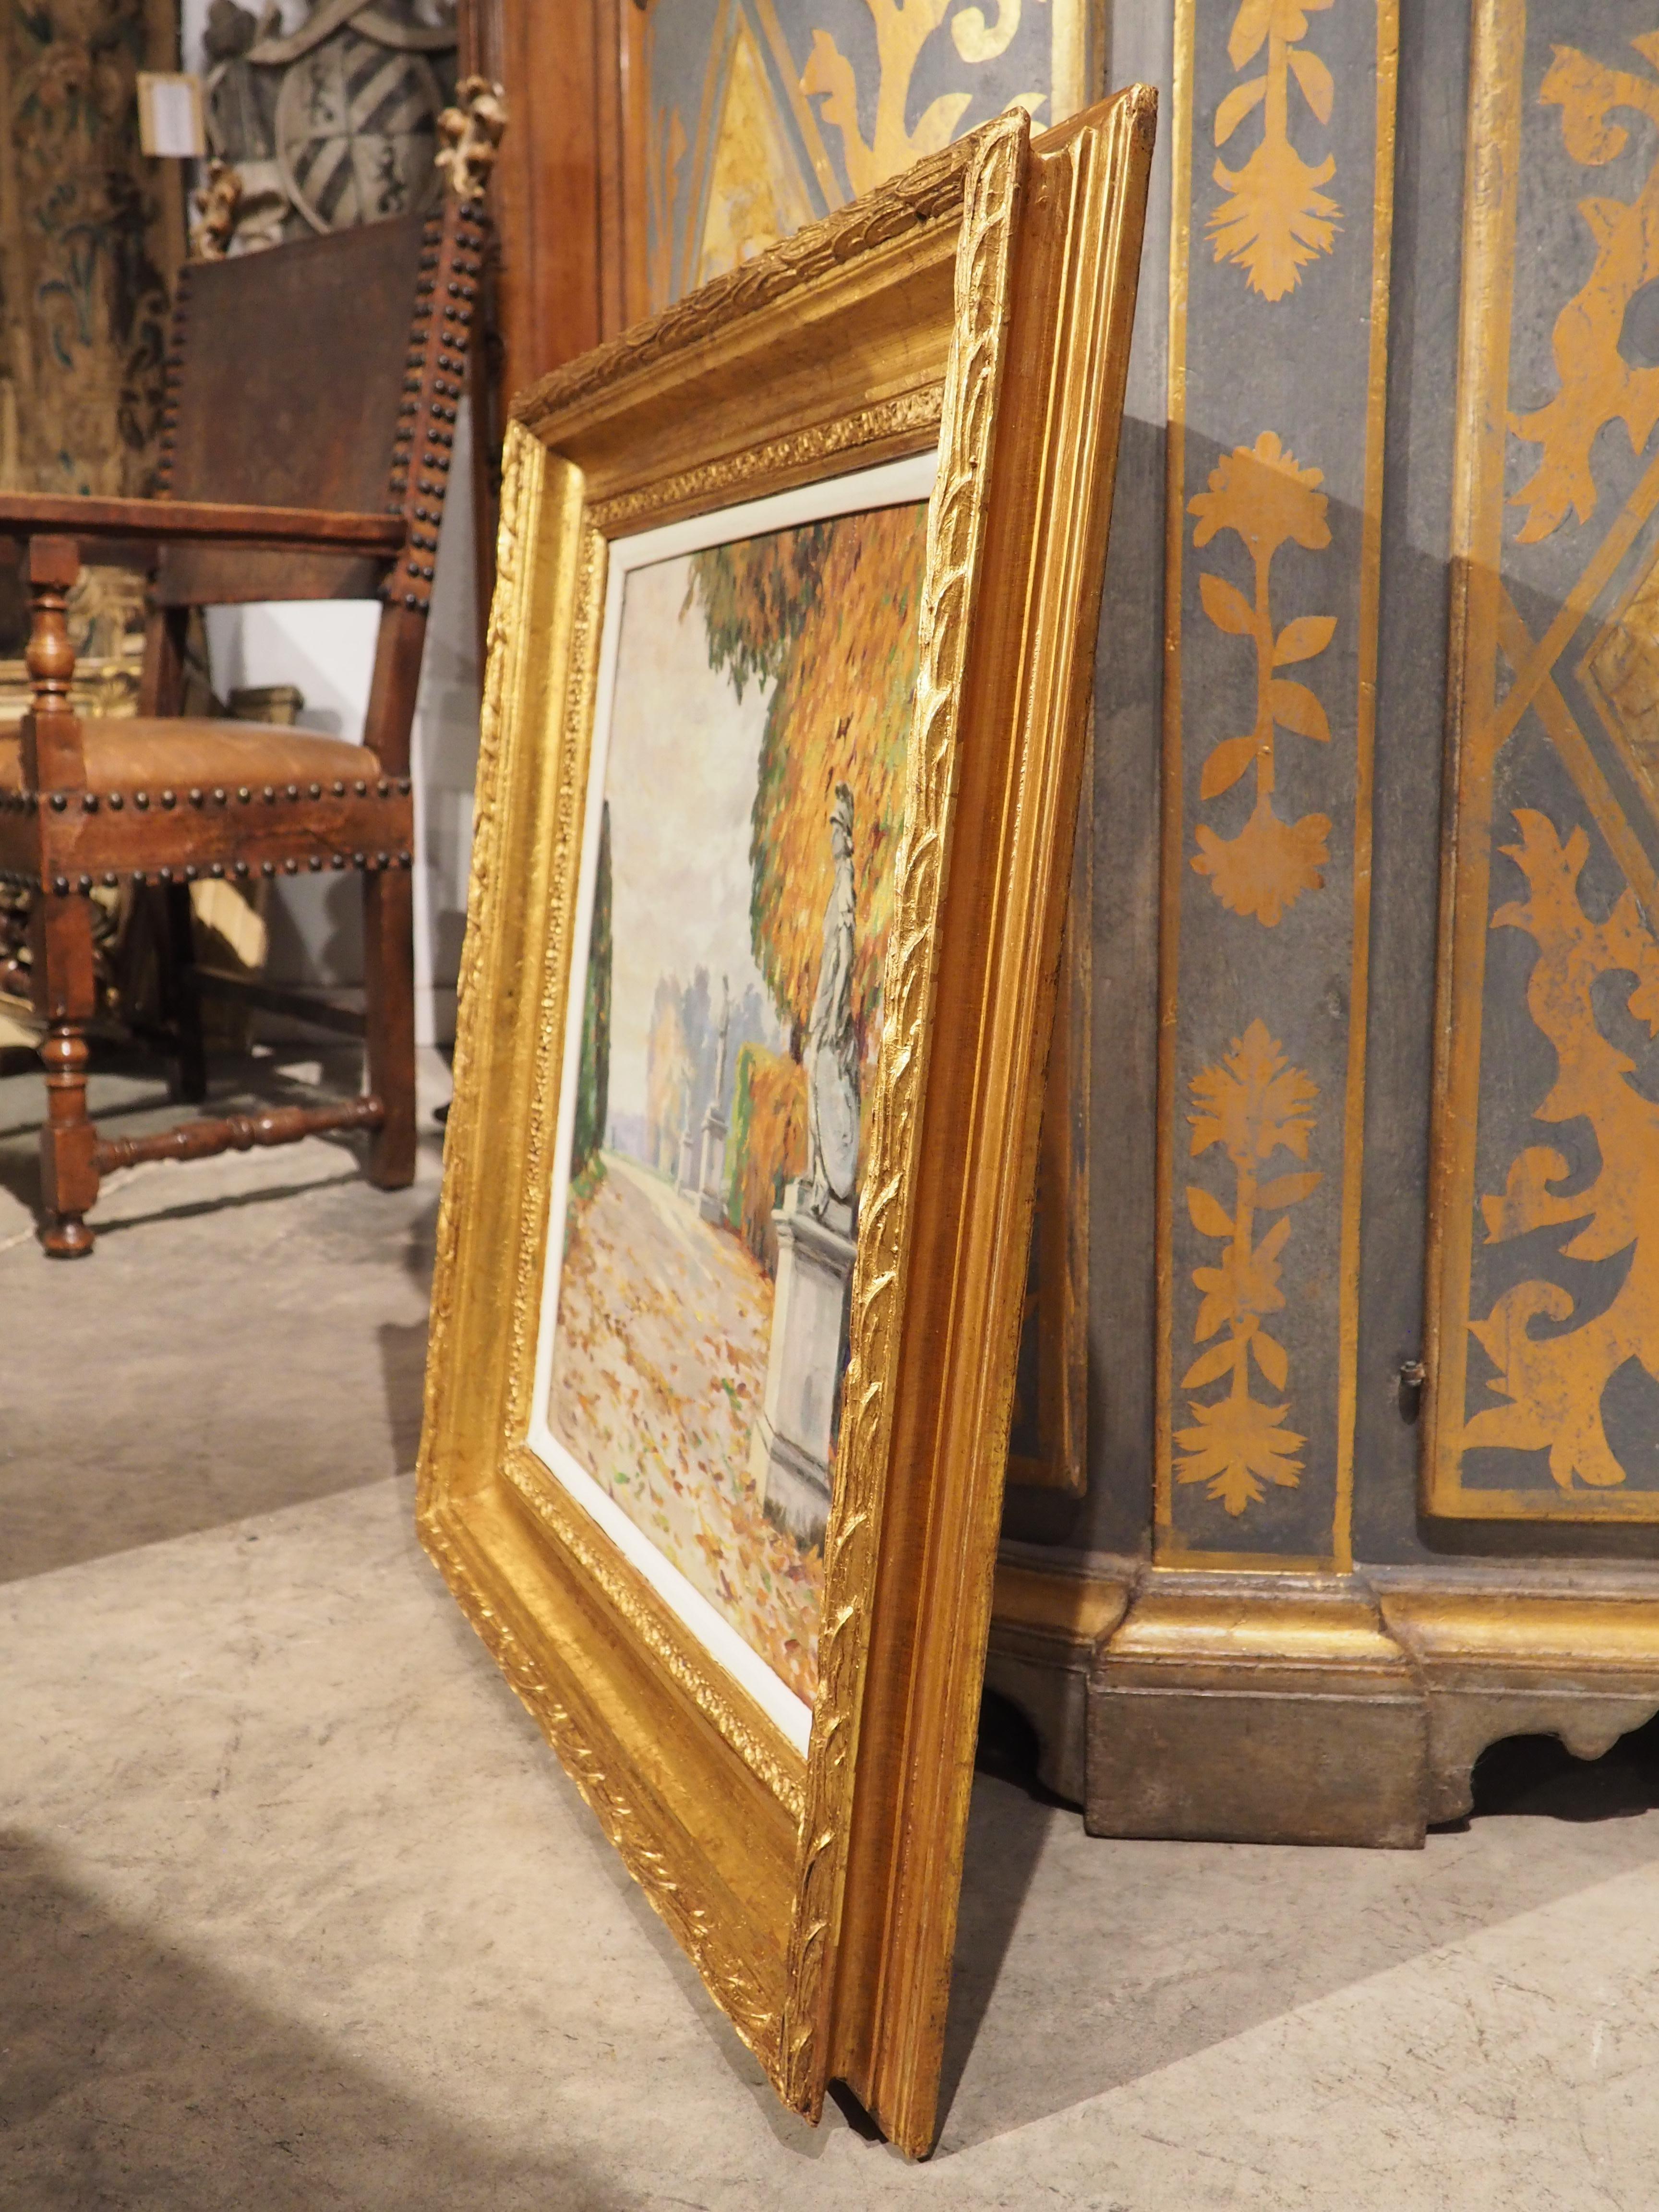 Réalisée par le peintre français Edouard-Henri HENRY (1898-1973), cette huile sur toile représente une partie d'un jardin du château de Versailles. Plus précisément, l'allée fortement boisée fait partie du célèbre Parterre Nord, comme l'indique une